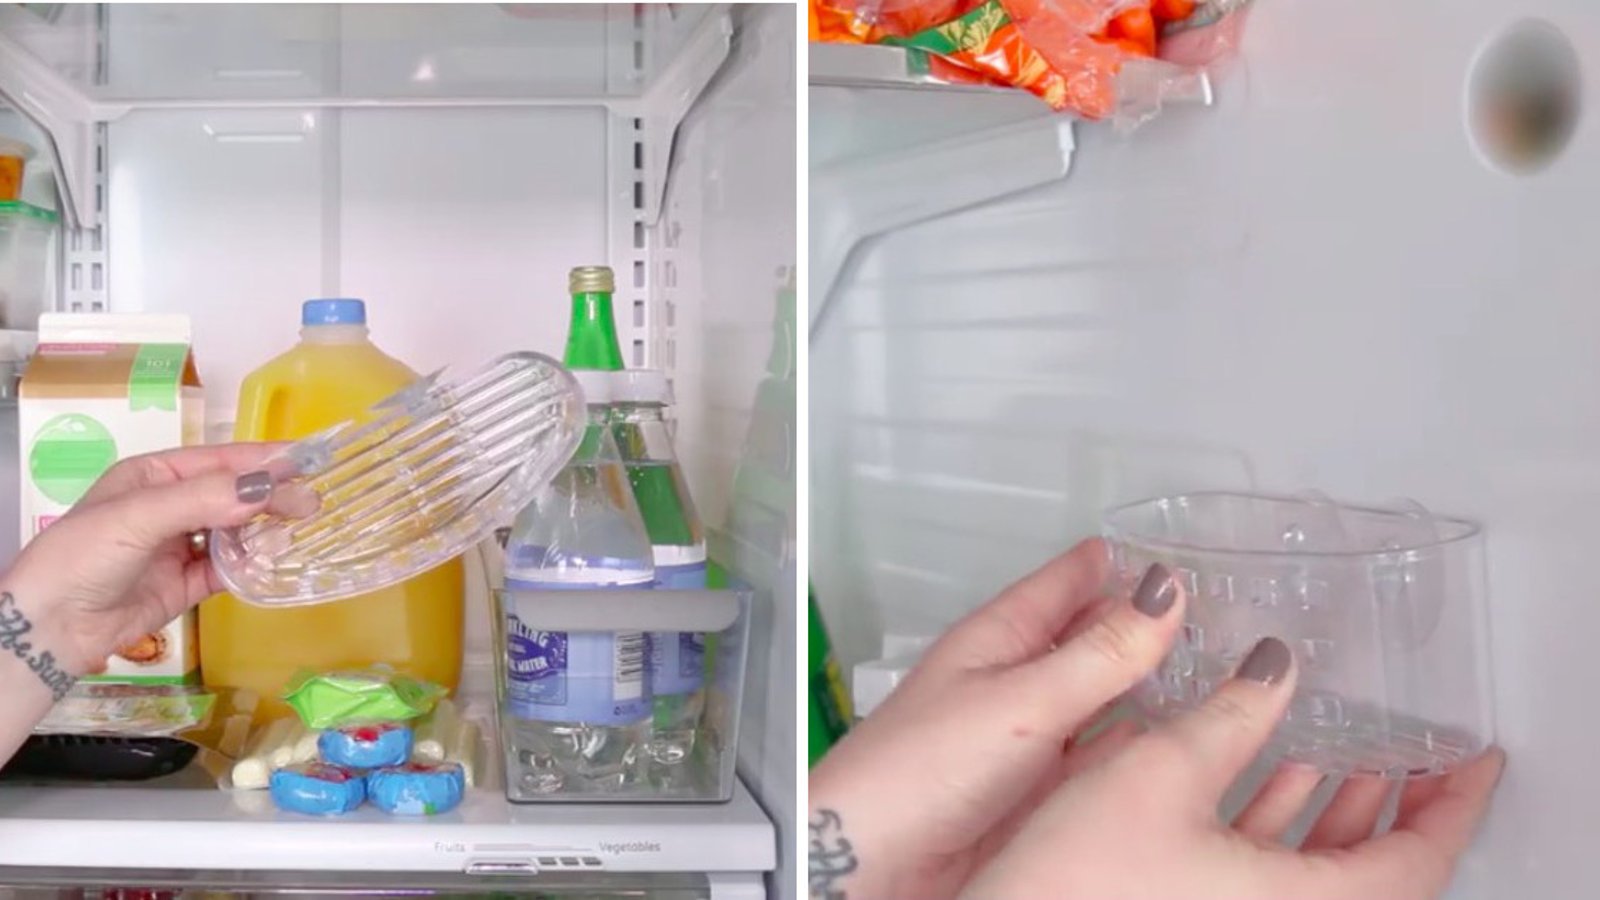 Elle prend un panier pour brosses à dents et le place dans son frigo. Toutes ses idées de rangement sont vraiment pratiques.